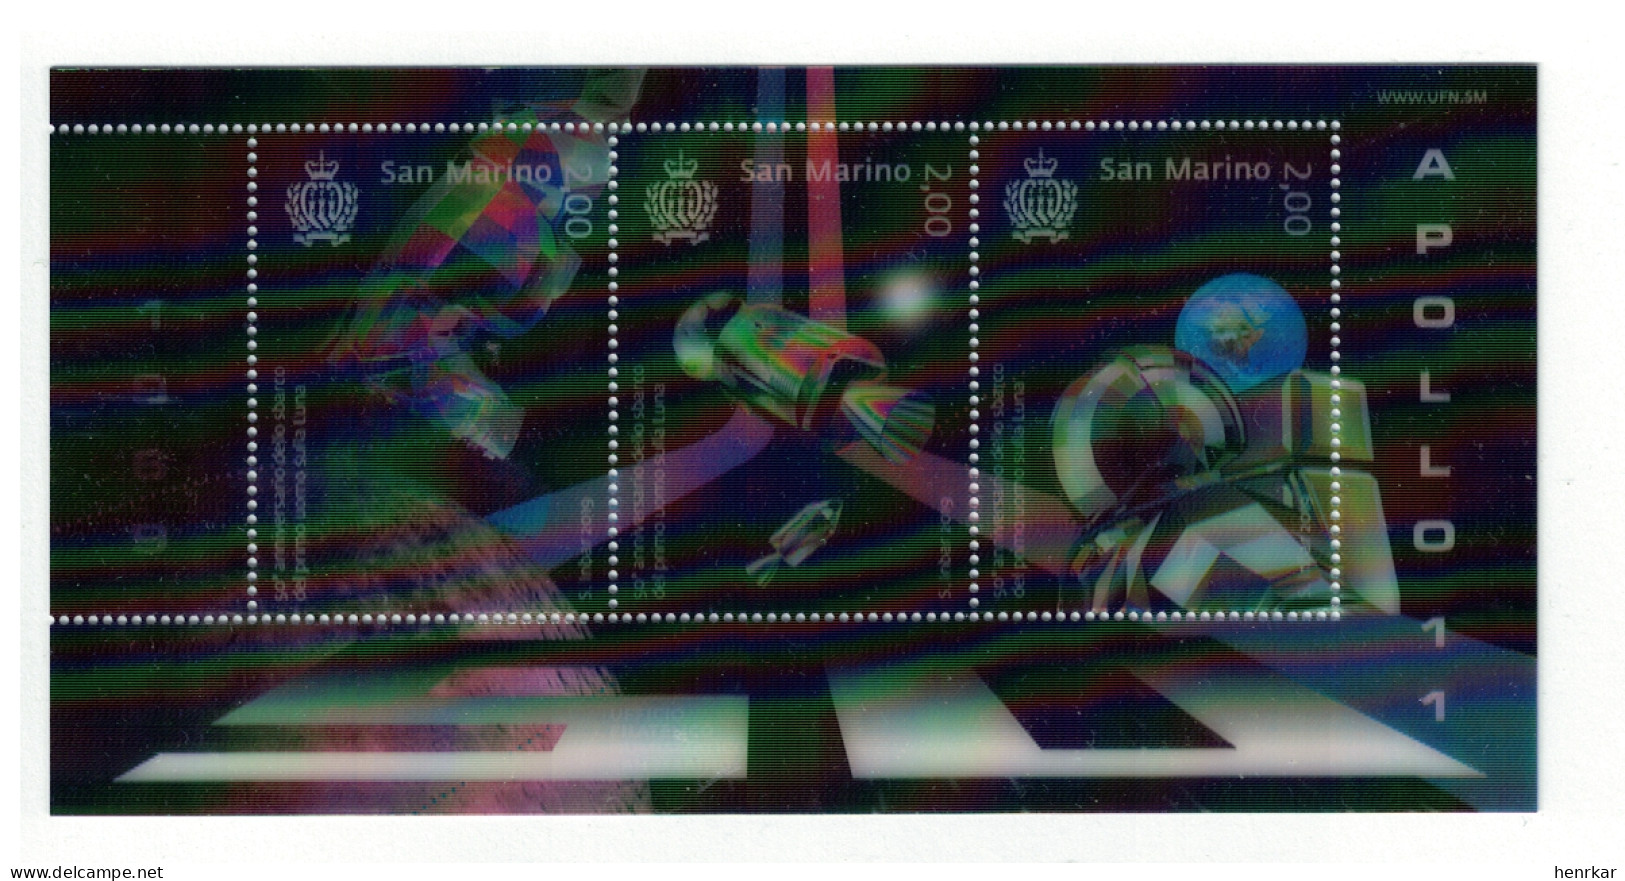 San Marino 2019 Space Hologram 3 Stamp Mini Sheet MNH ** - Unused Stamps